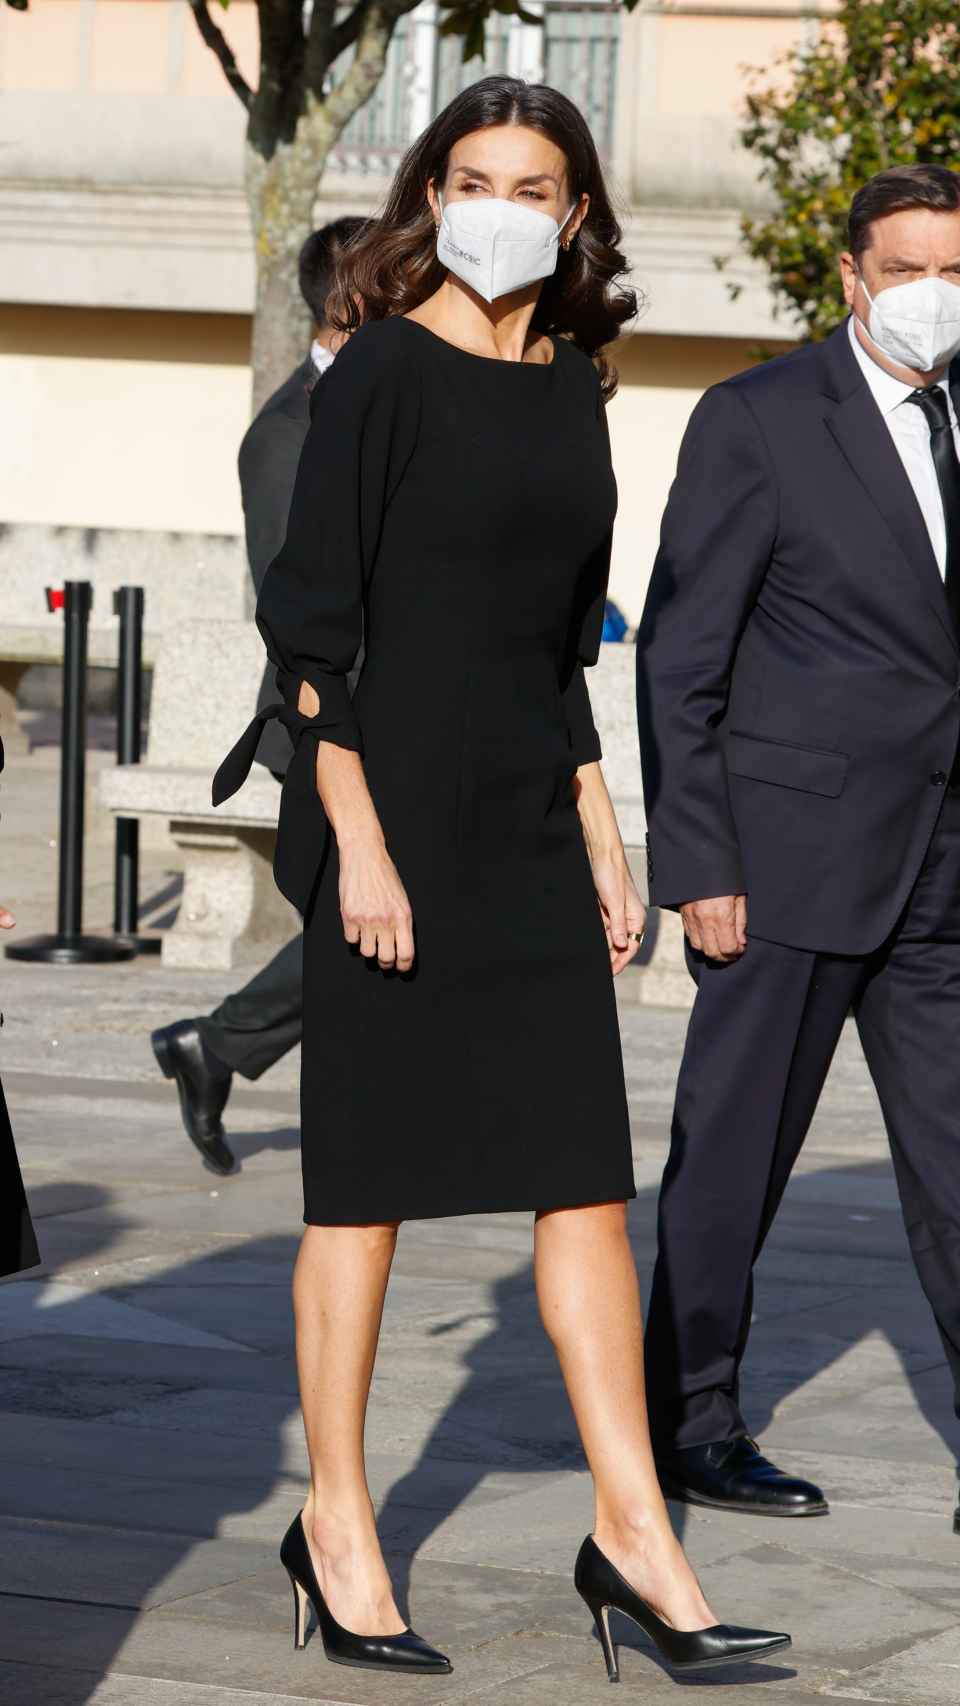 La reina Letizia estrenó este vestido de Carolina Herrera en 2017.